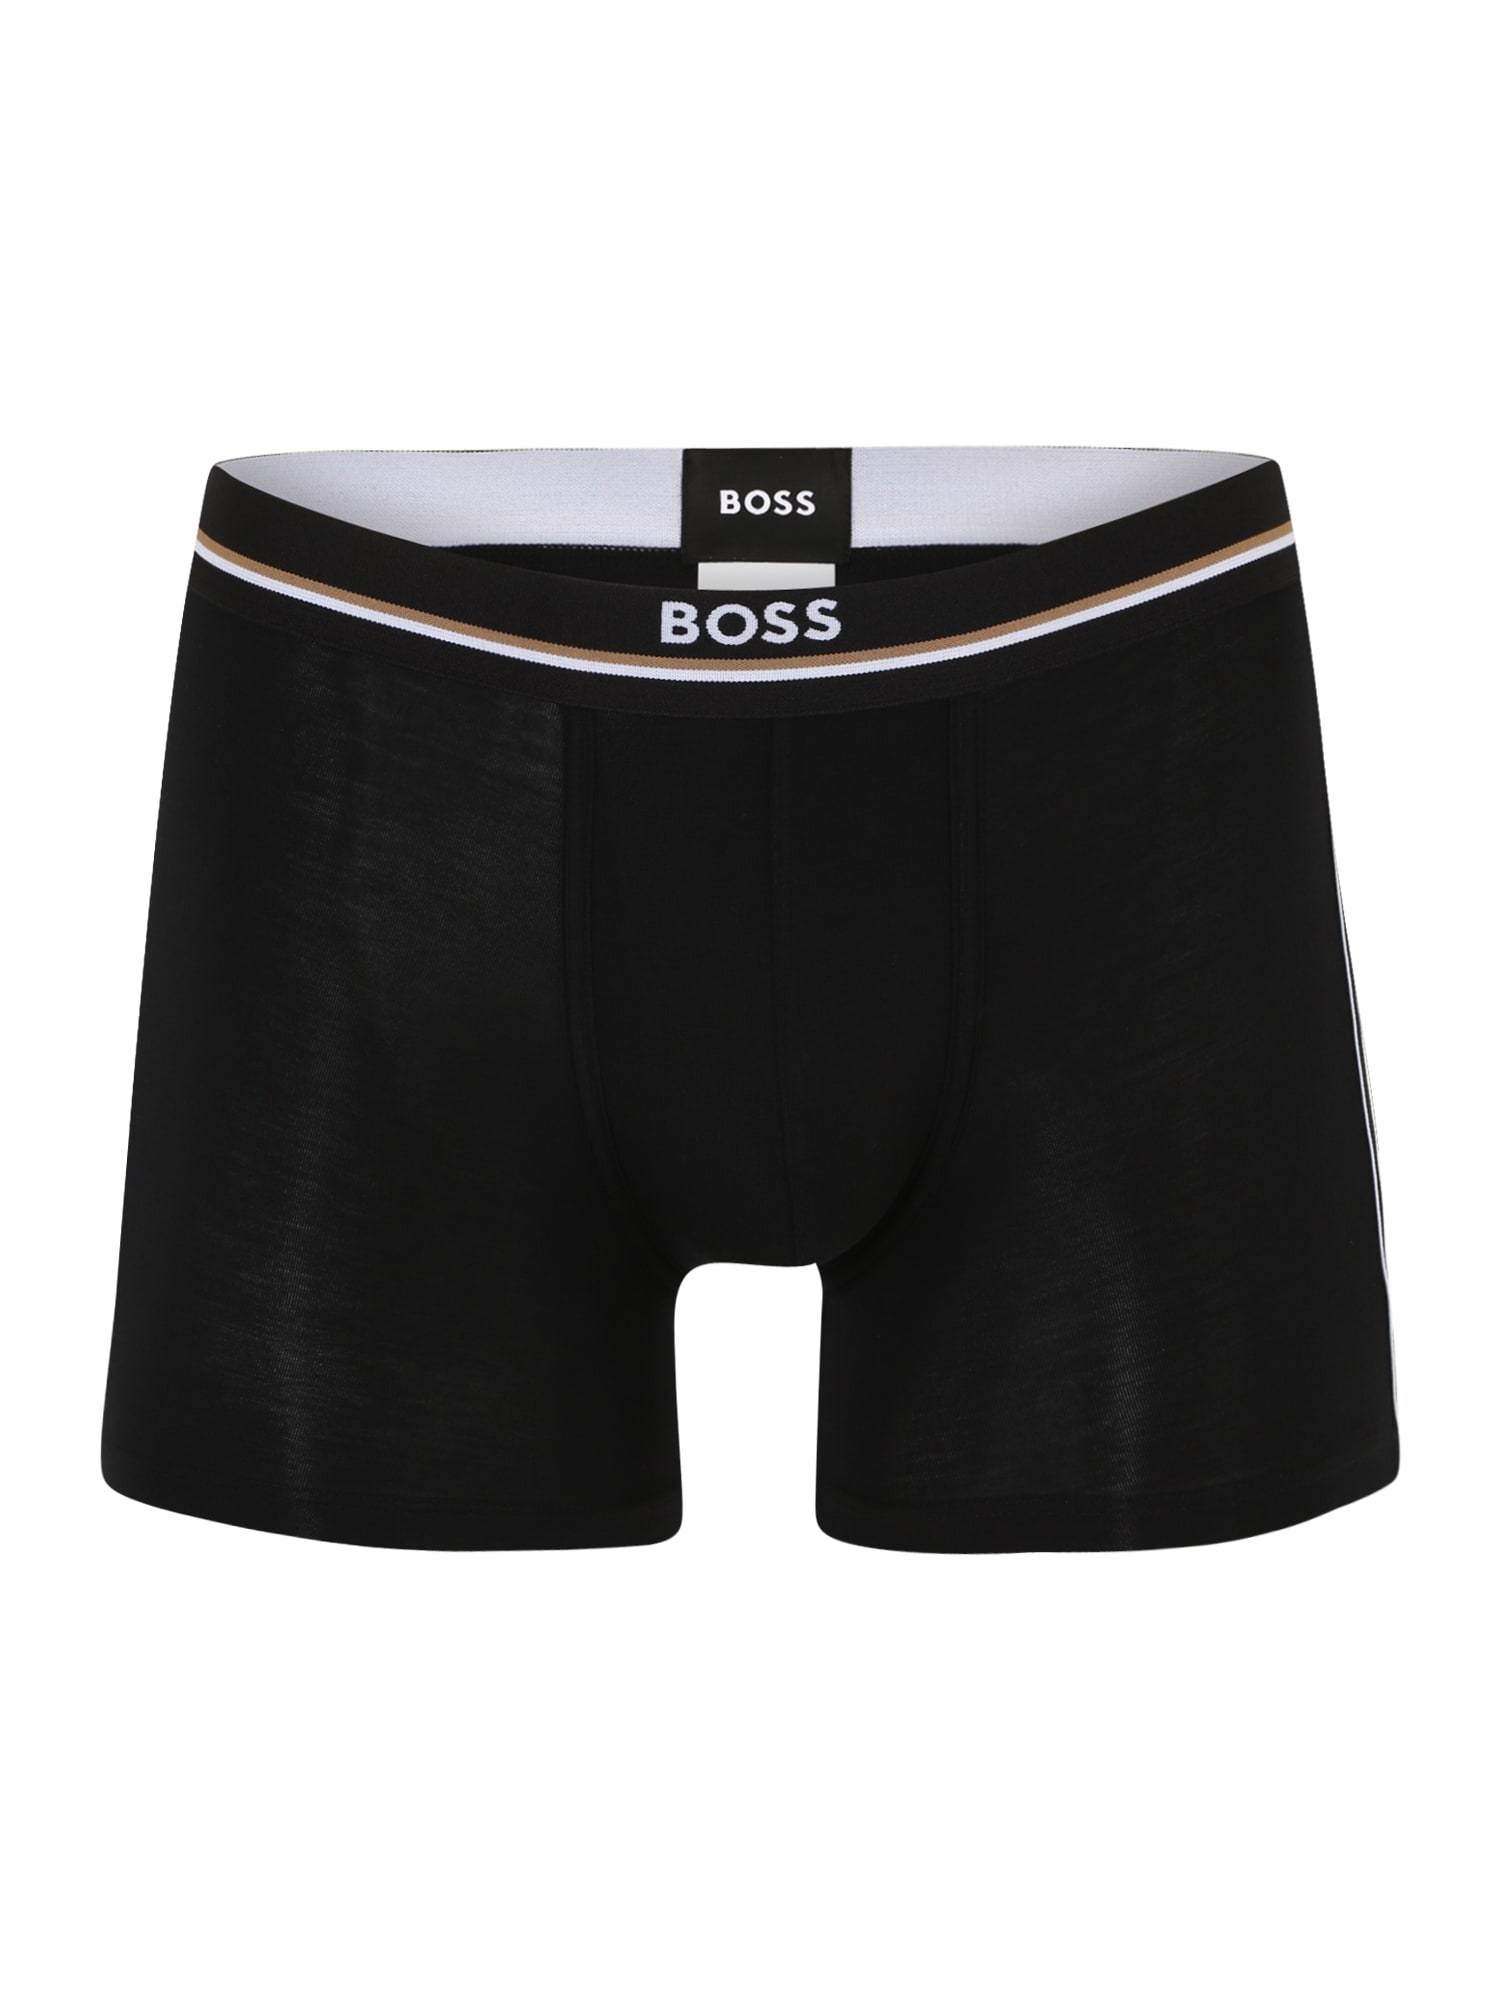 Мъже > Дрехи > Бельо > Мъжки слипове > Панталони BOSS Black Боксерки ‘Relax’  черно / бяло